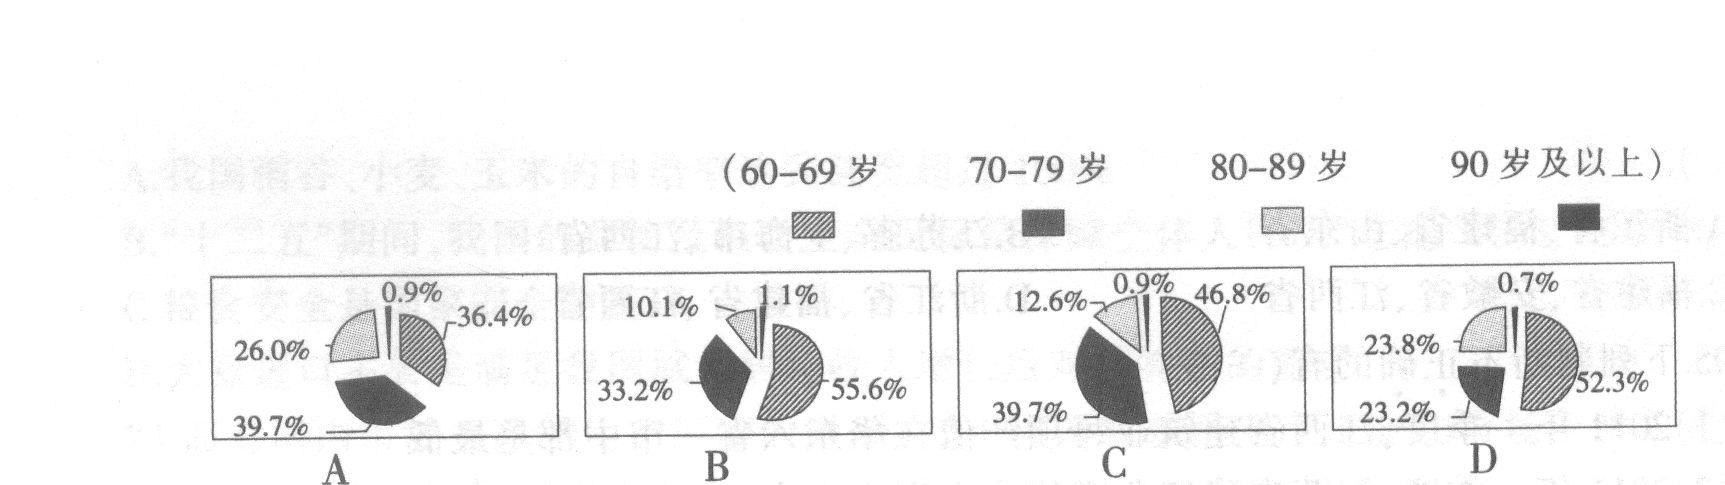 下列选项中，哪个是2008年北京市60岁及以上老年人口年龄构成图？  请帮忙给出正确答案和分析，谢谢